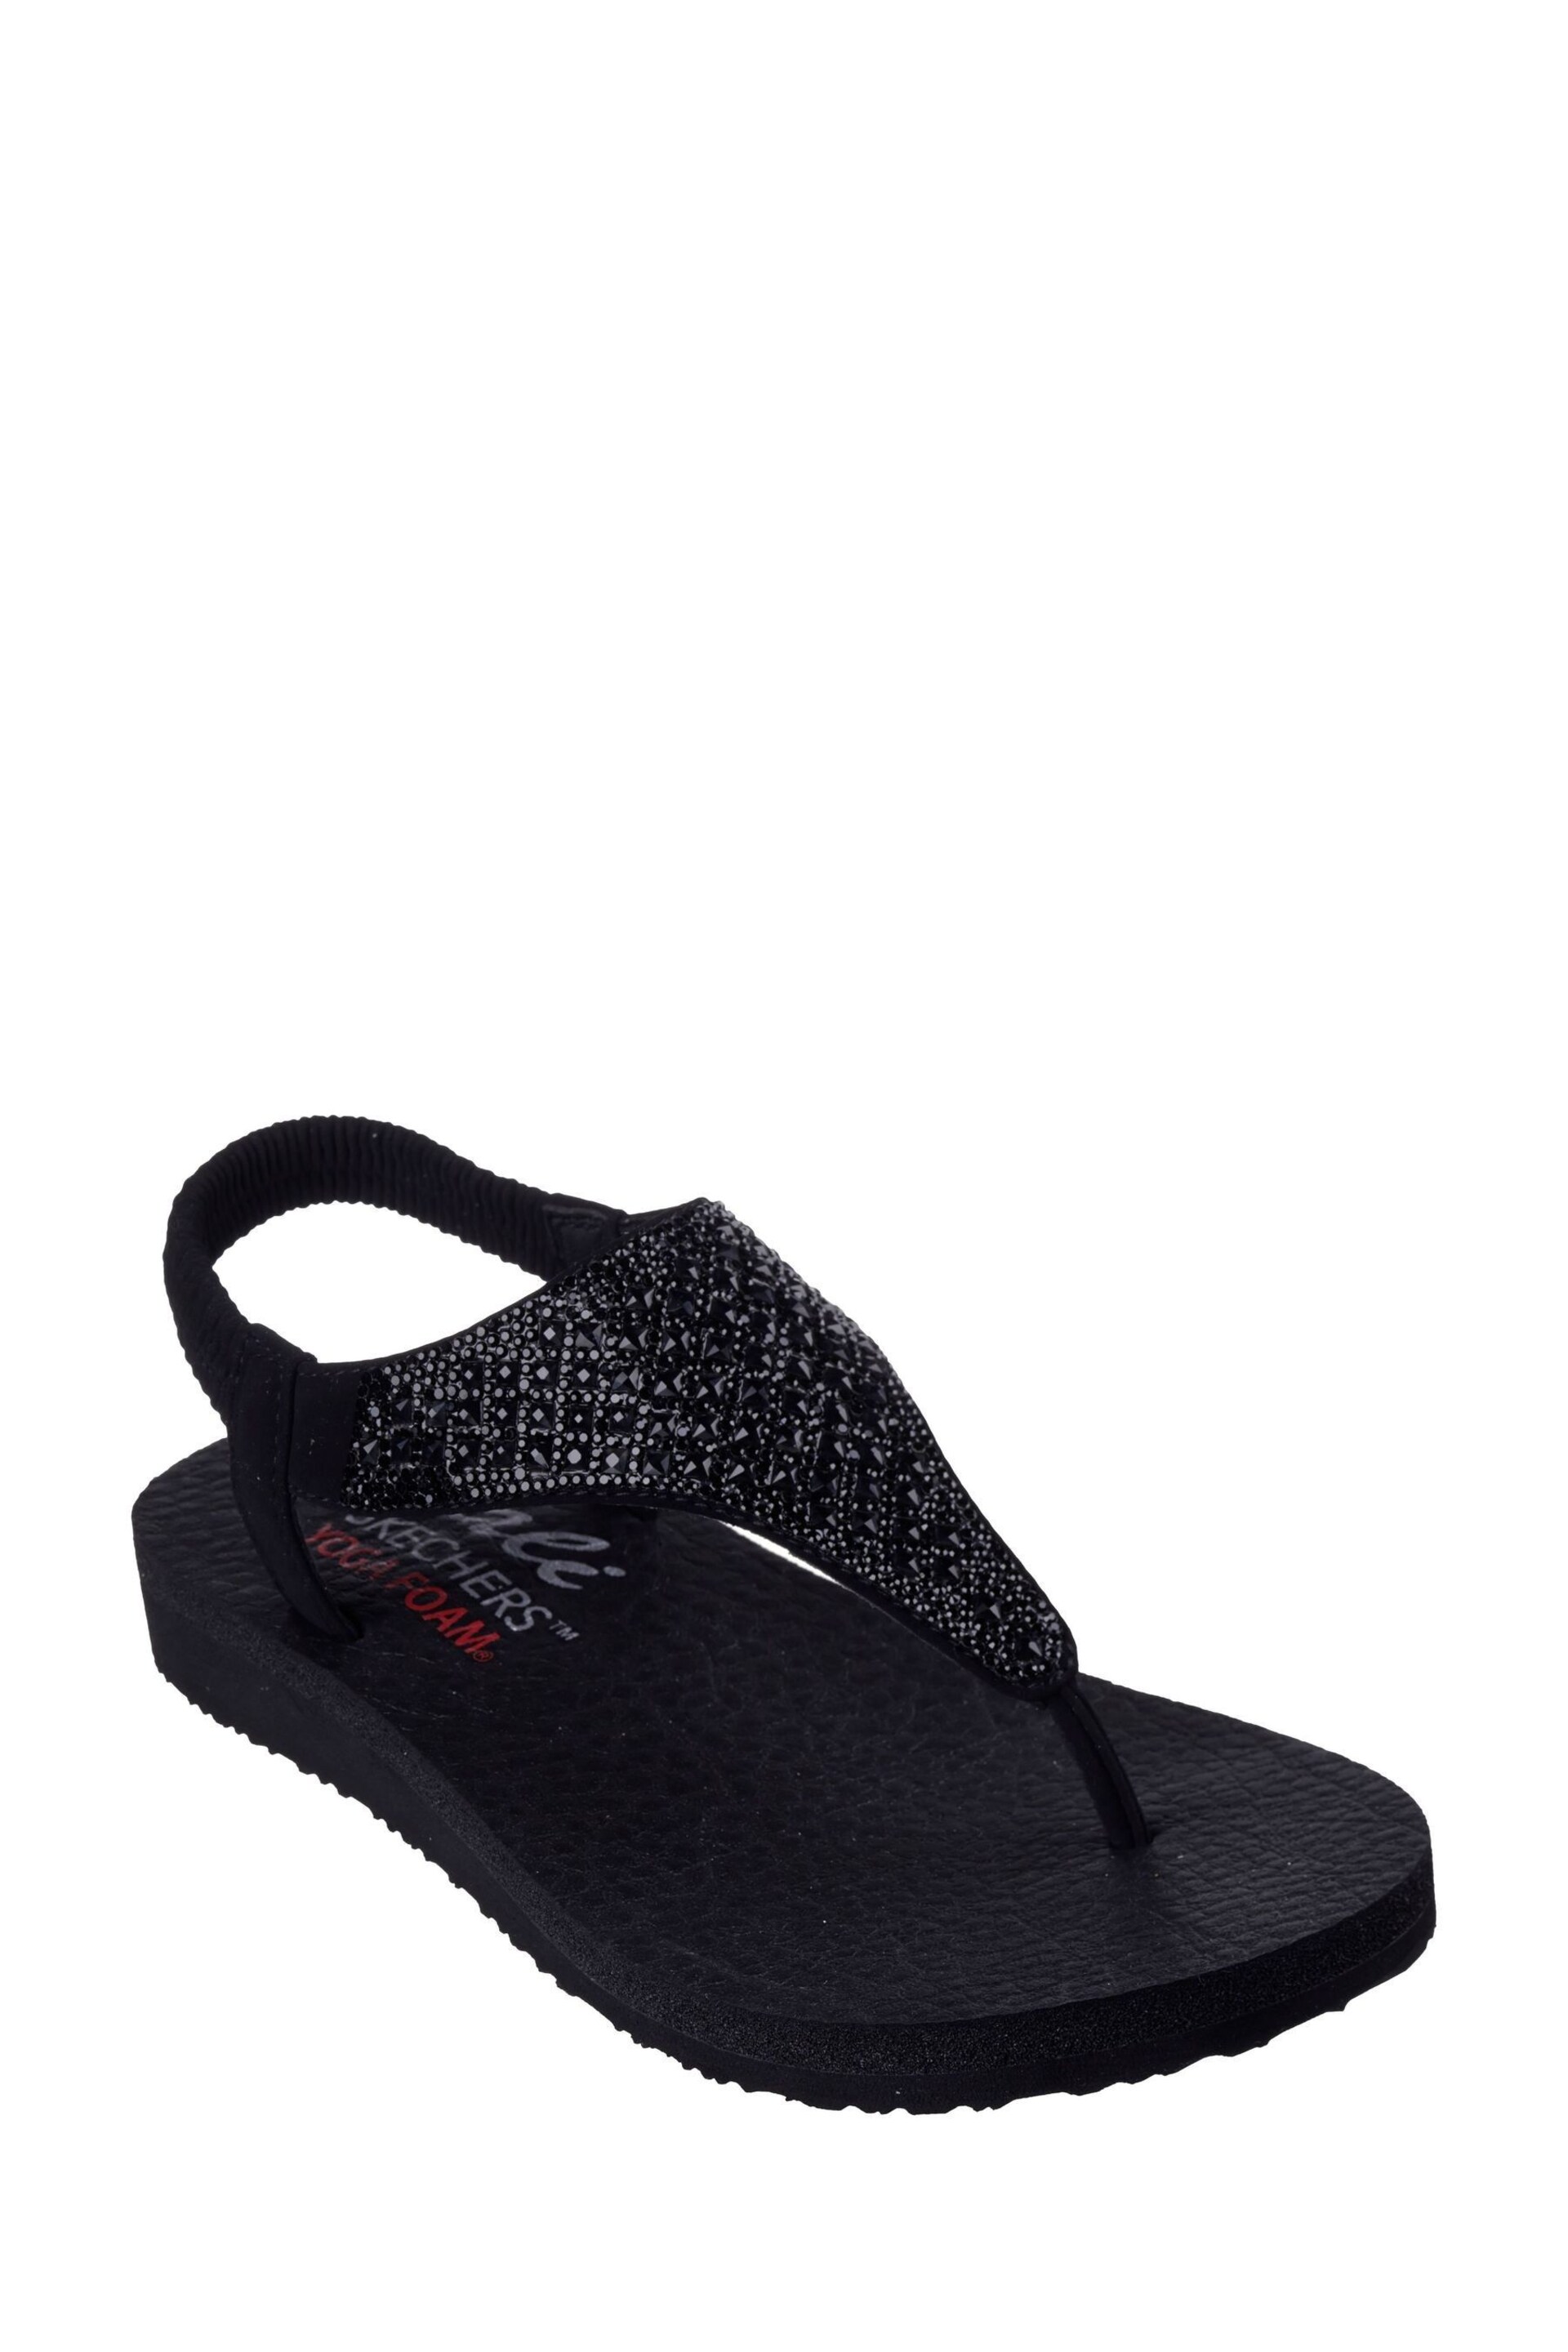 Skechers Black Meditation Rockstar Sandals - Image 1 of 5